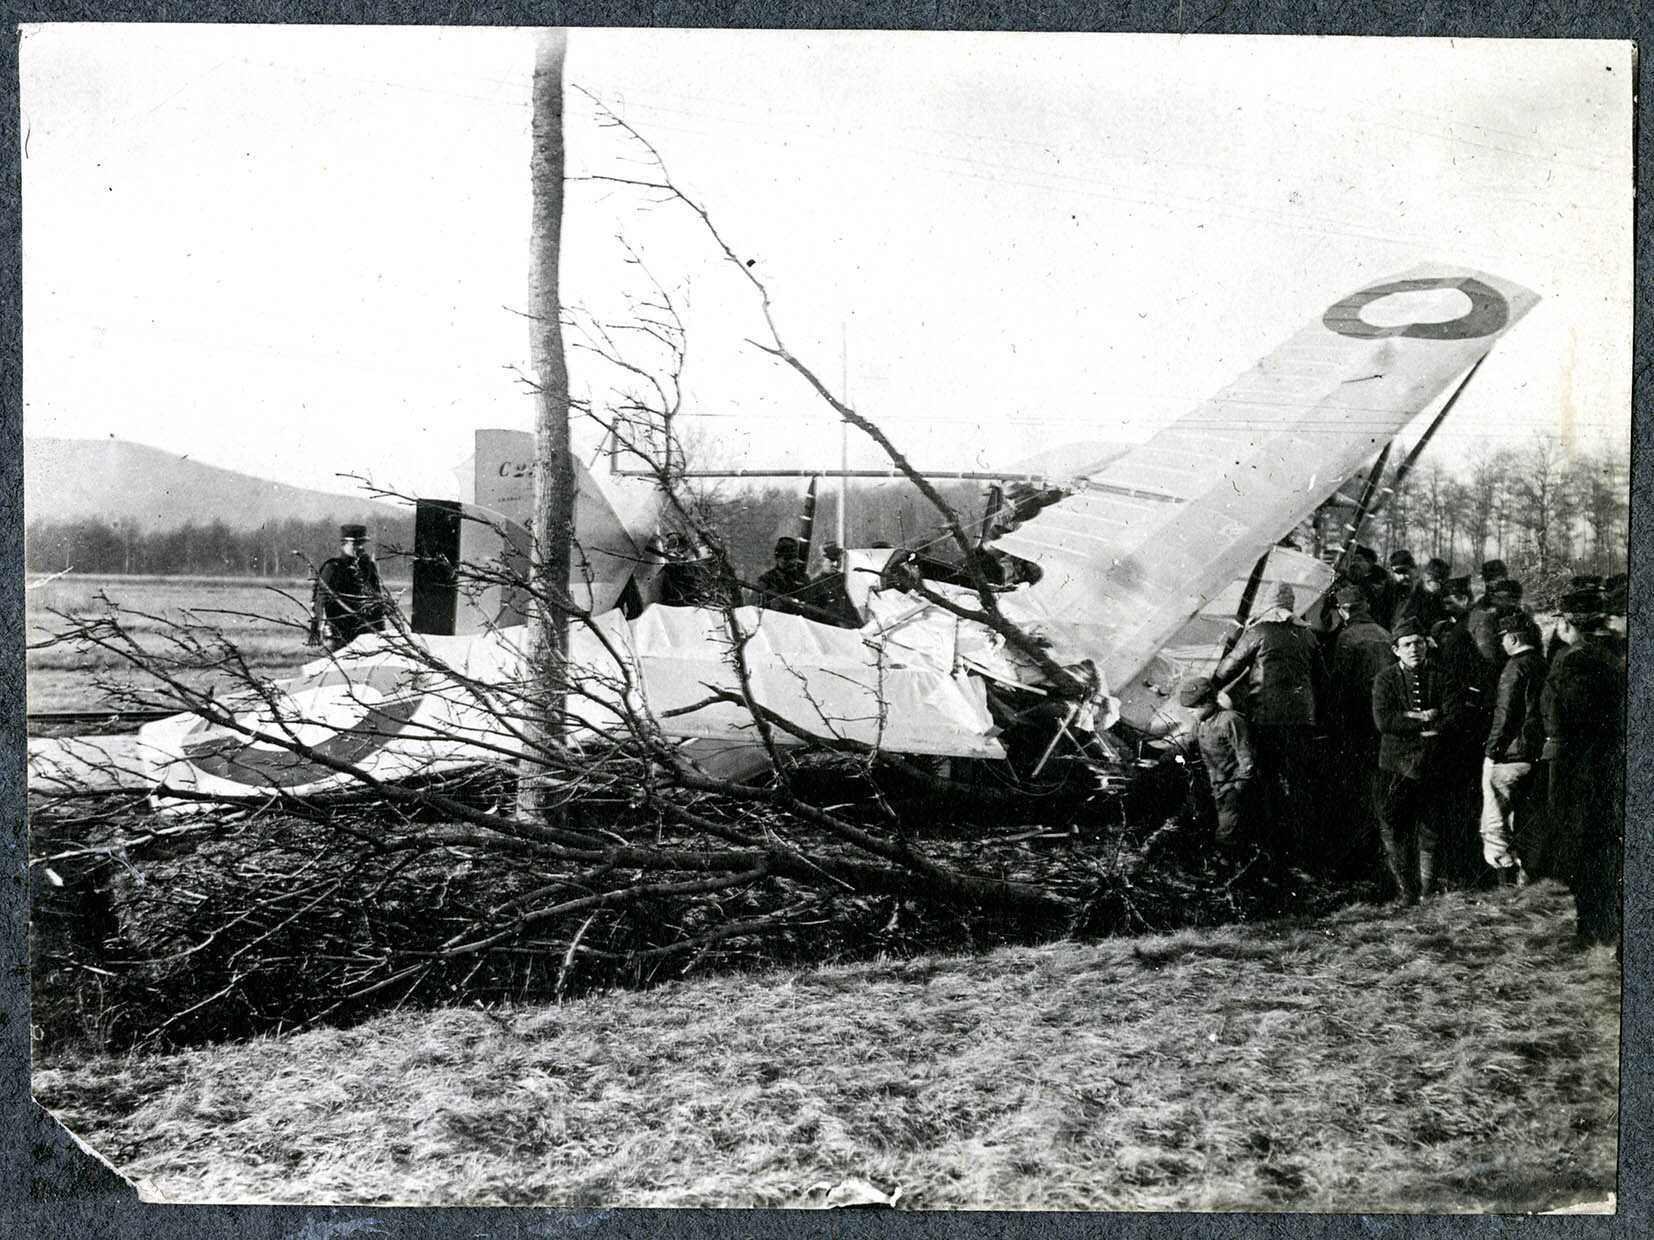 Lachapelle-sous-Rougemont, accident d'un avion bombardiers français, mars 1915.